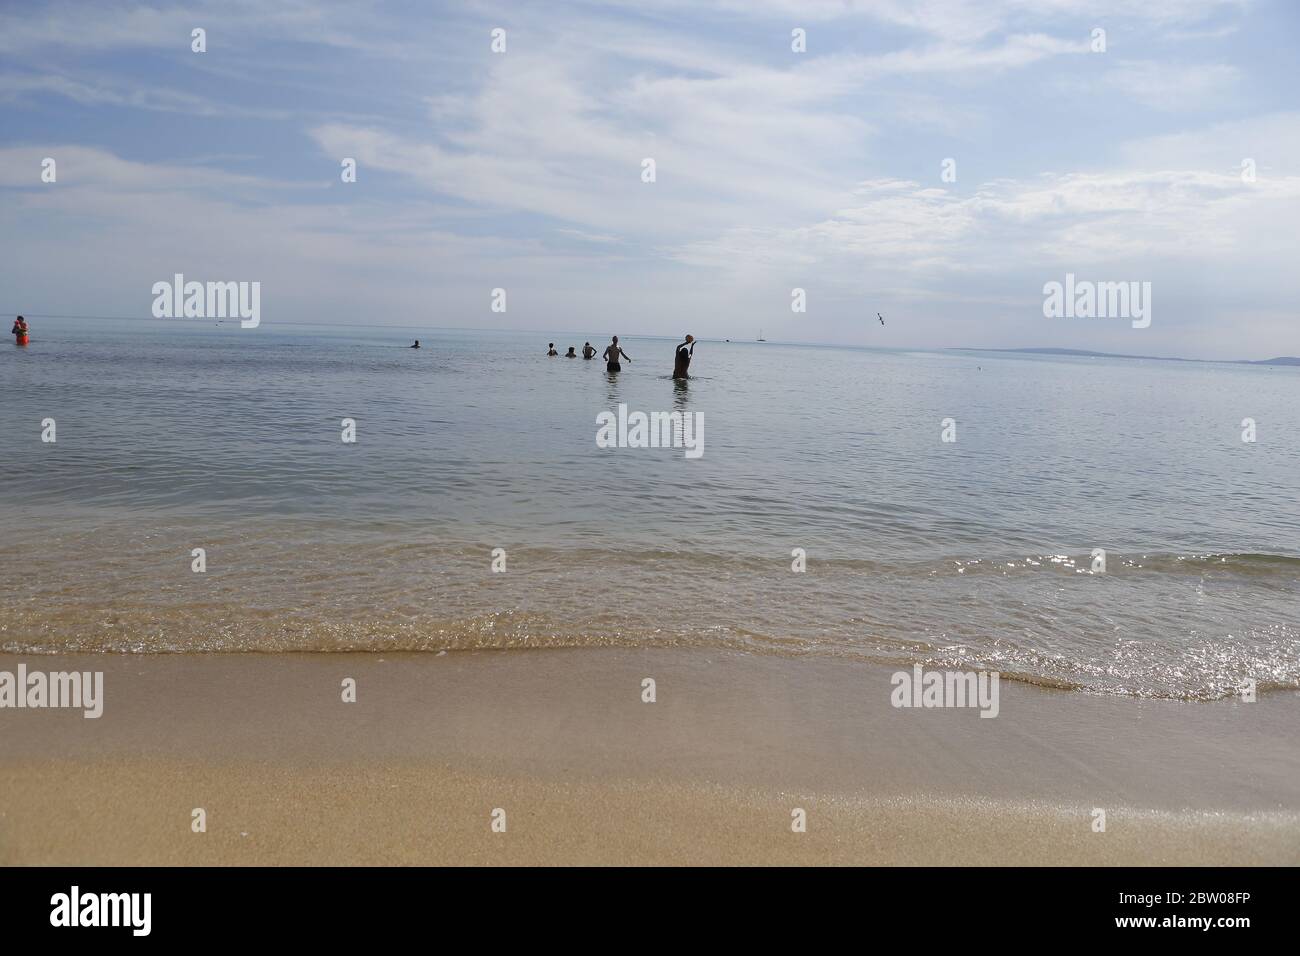 Les gens prennent le soleil ou nagent sur la plage d'El Arenal car certaines provinces espagnoles sont autorisées à assouplir les restrictions de verrouillage dans le cadre de la maladie du coronavirus Banque D'Images